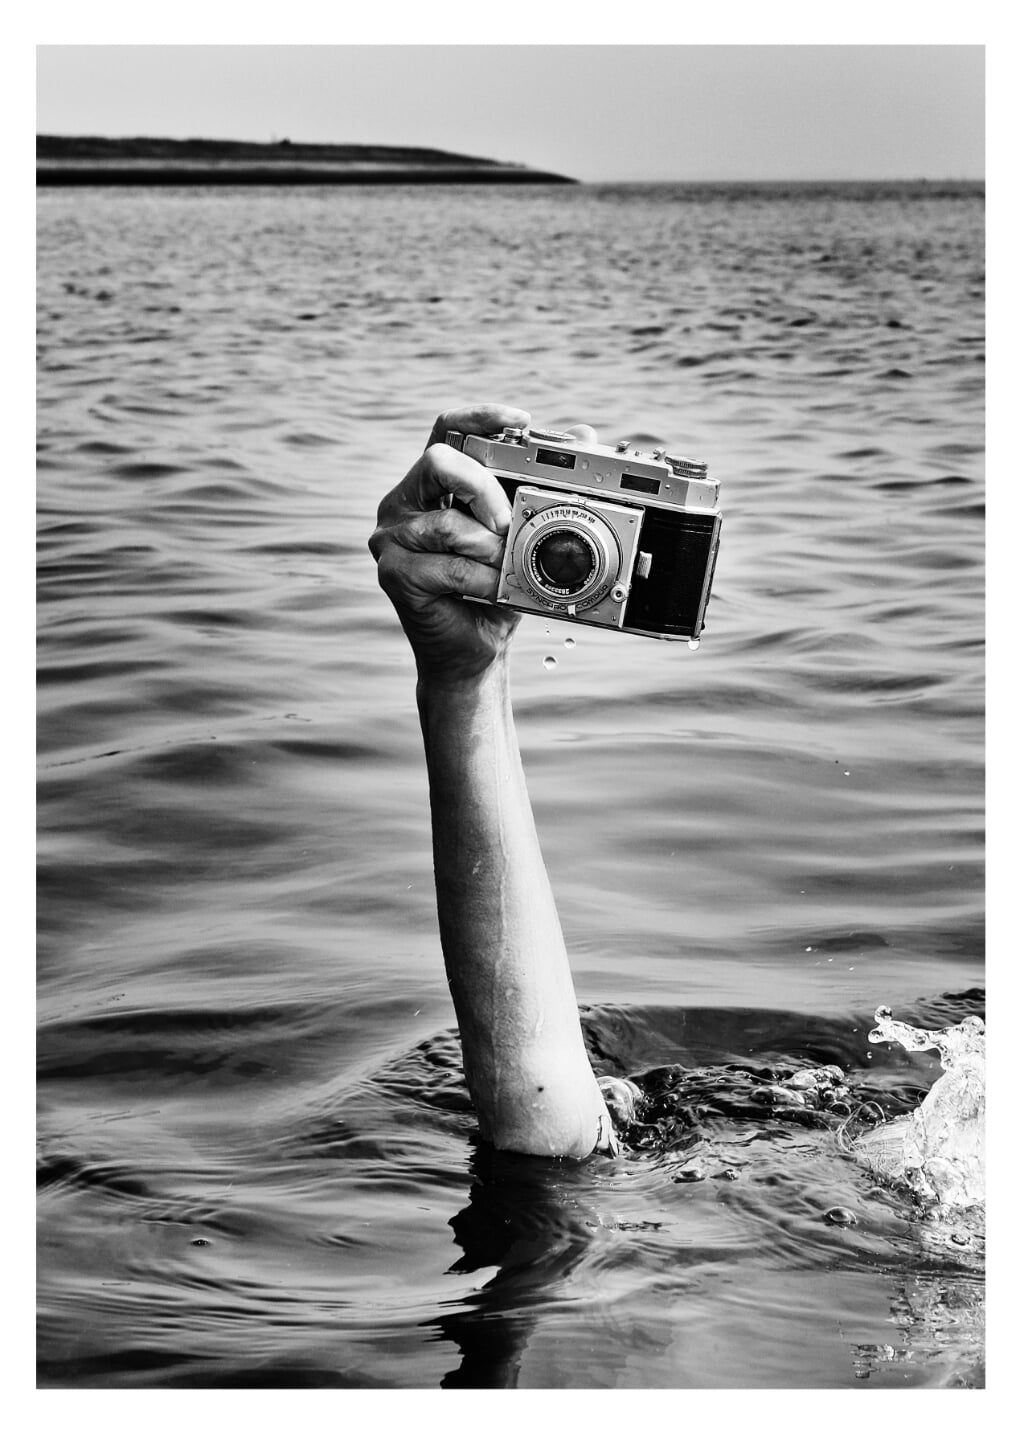 Fotowedstrijd met als thema: Water.